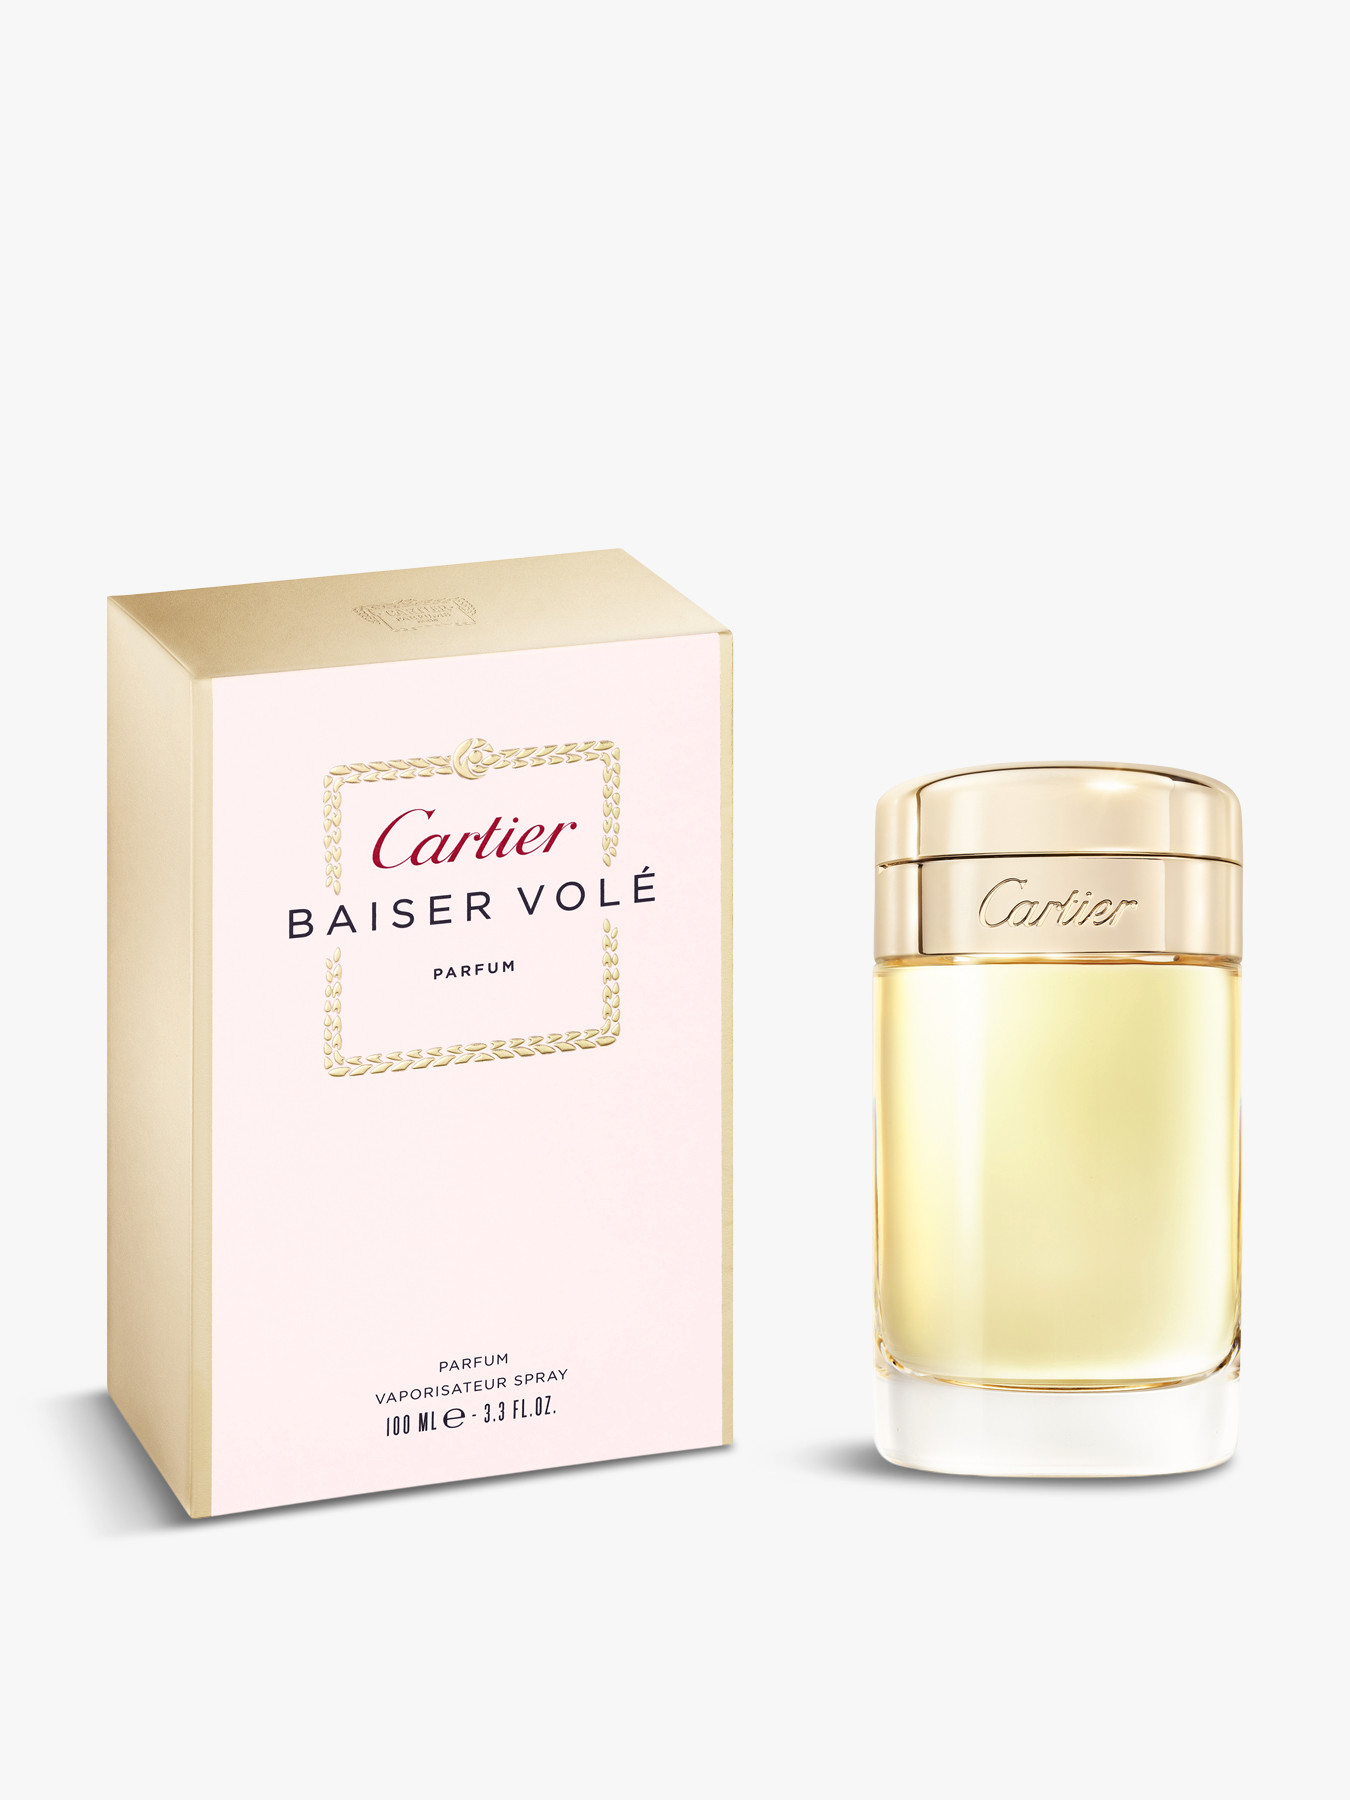 Cartier Baiser Volé Parfum 100ml | Fenwick